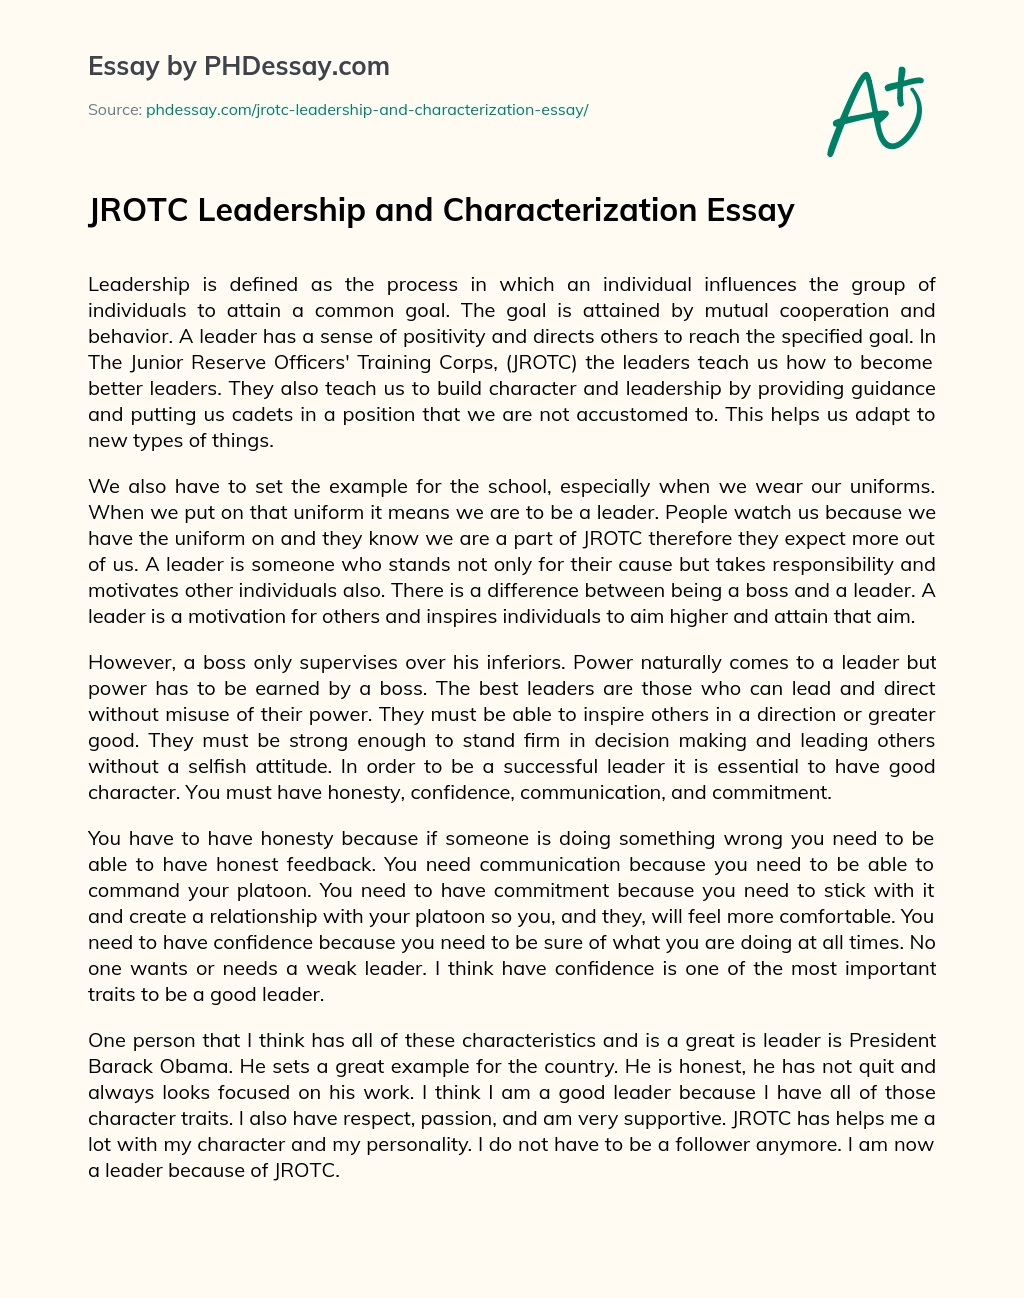 JROTC Leadership and Characterization Essay essay